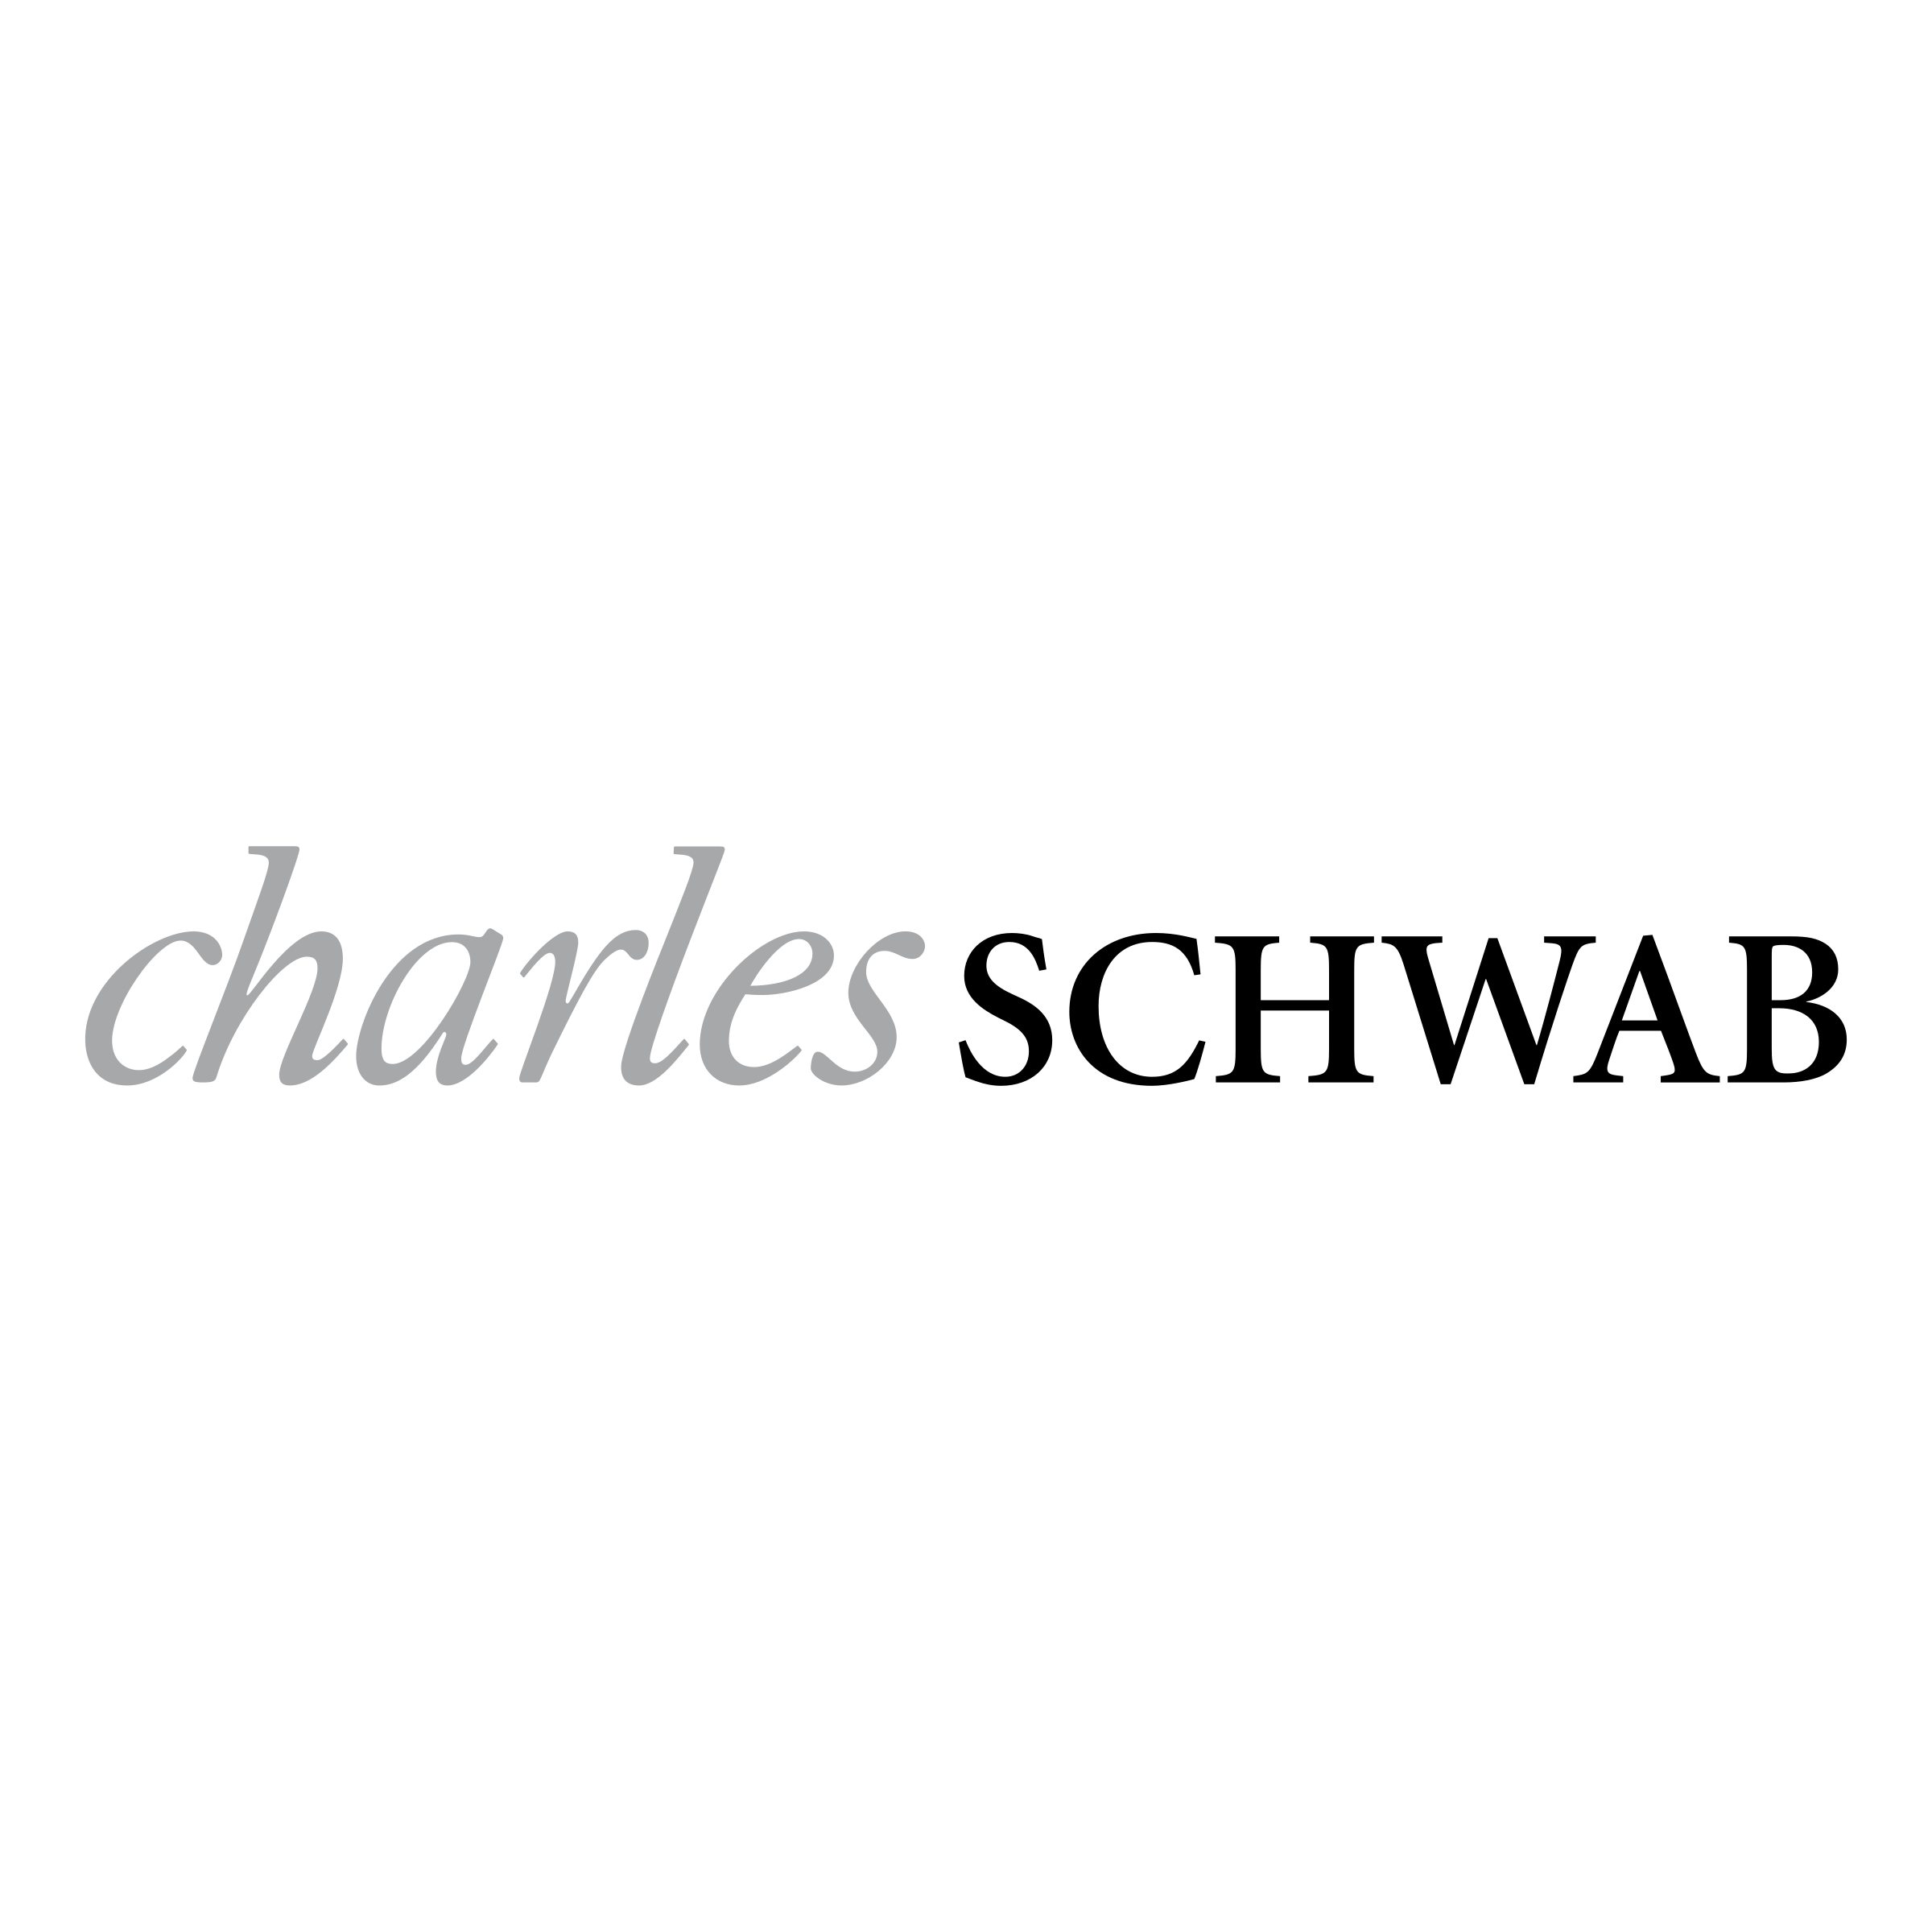 charles-schwab-2-logo-png-transparent.png